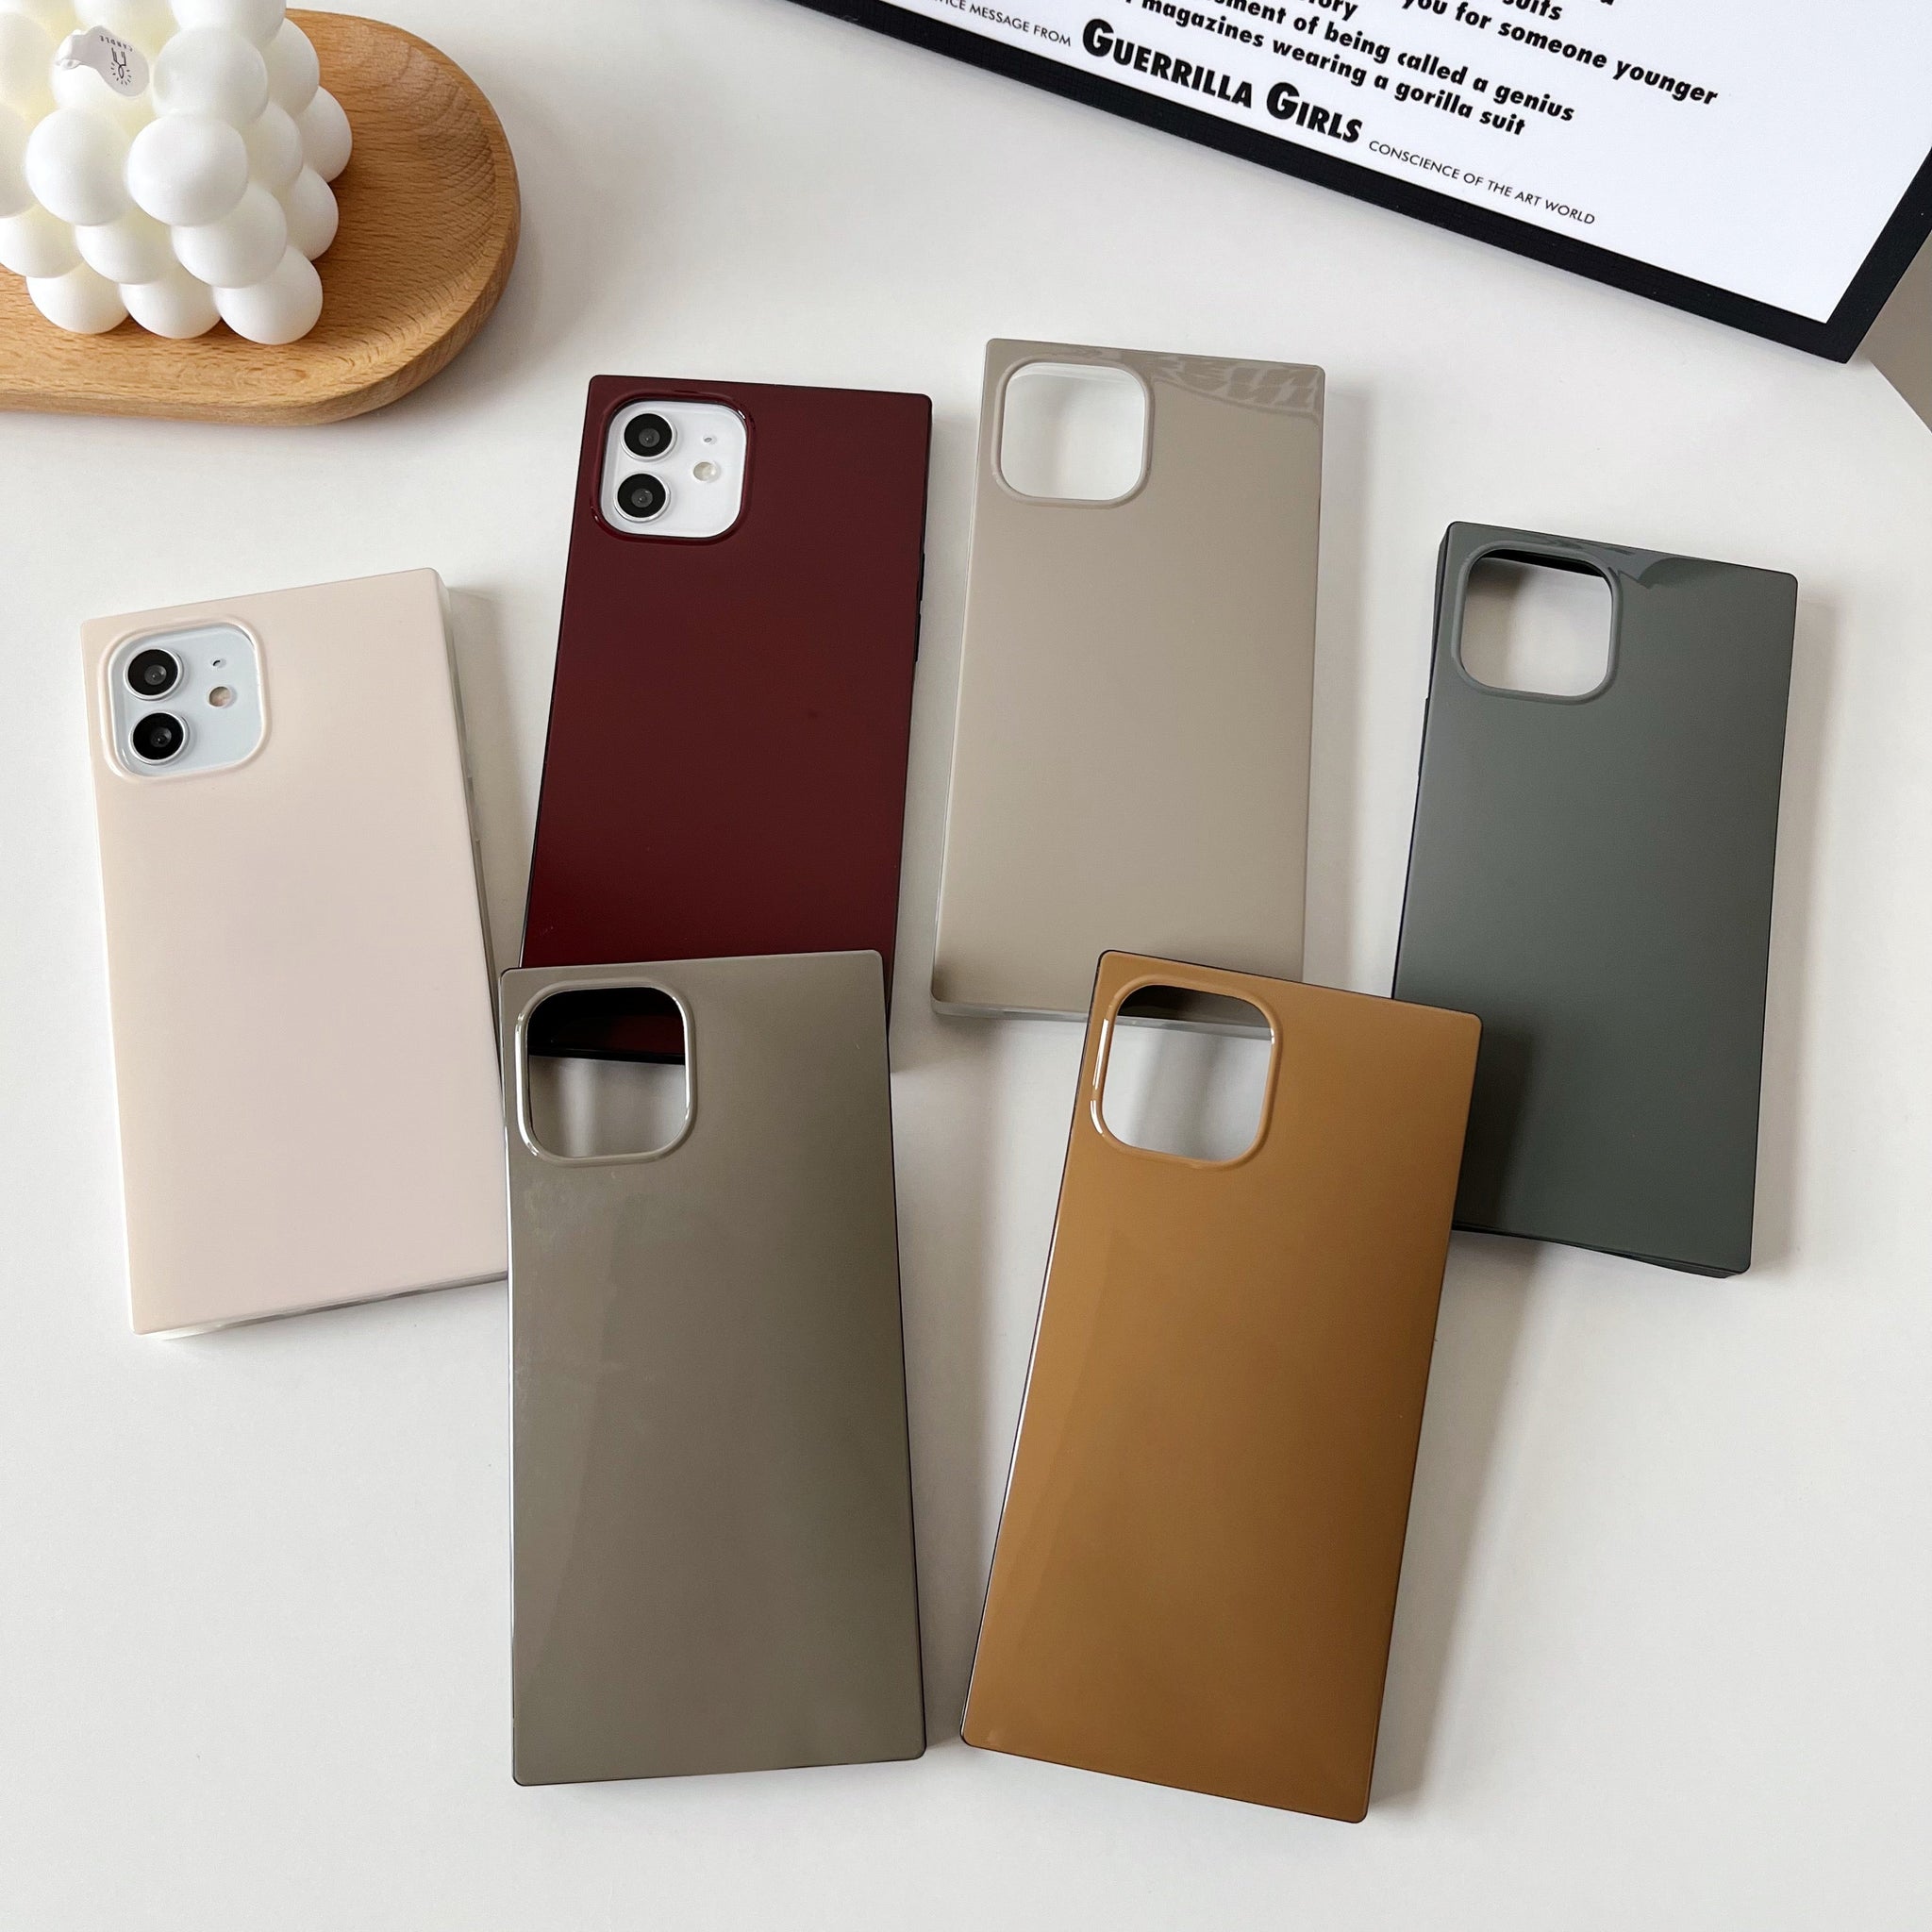 iPhone 11 Pro Max Case Square Neutral Plain Color (Asphalt Gray)